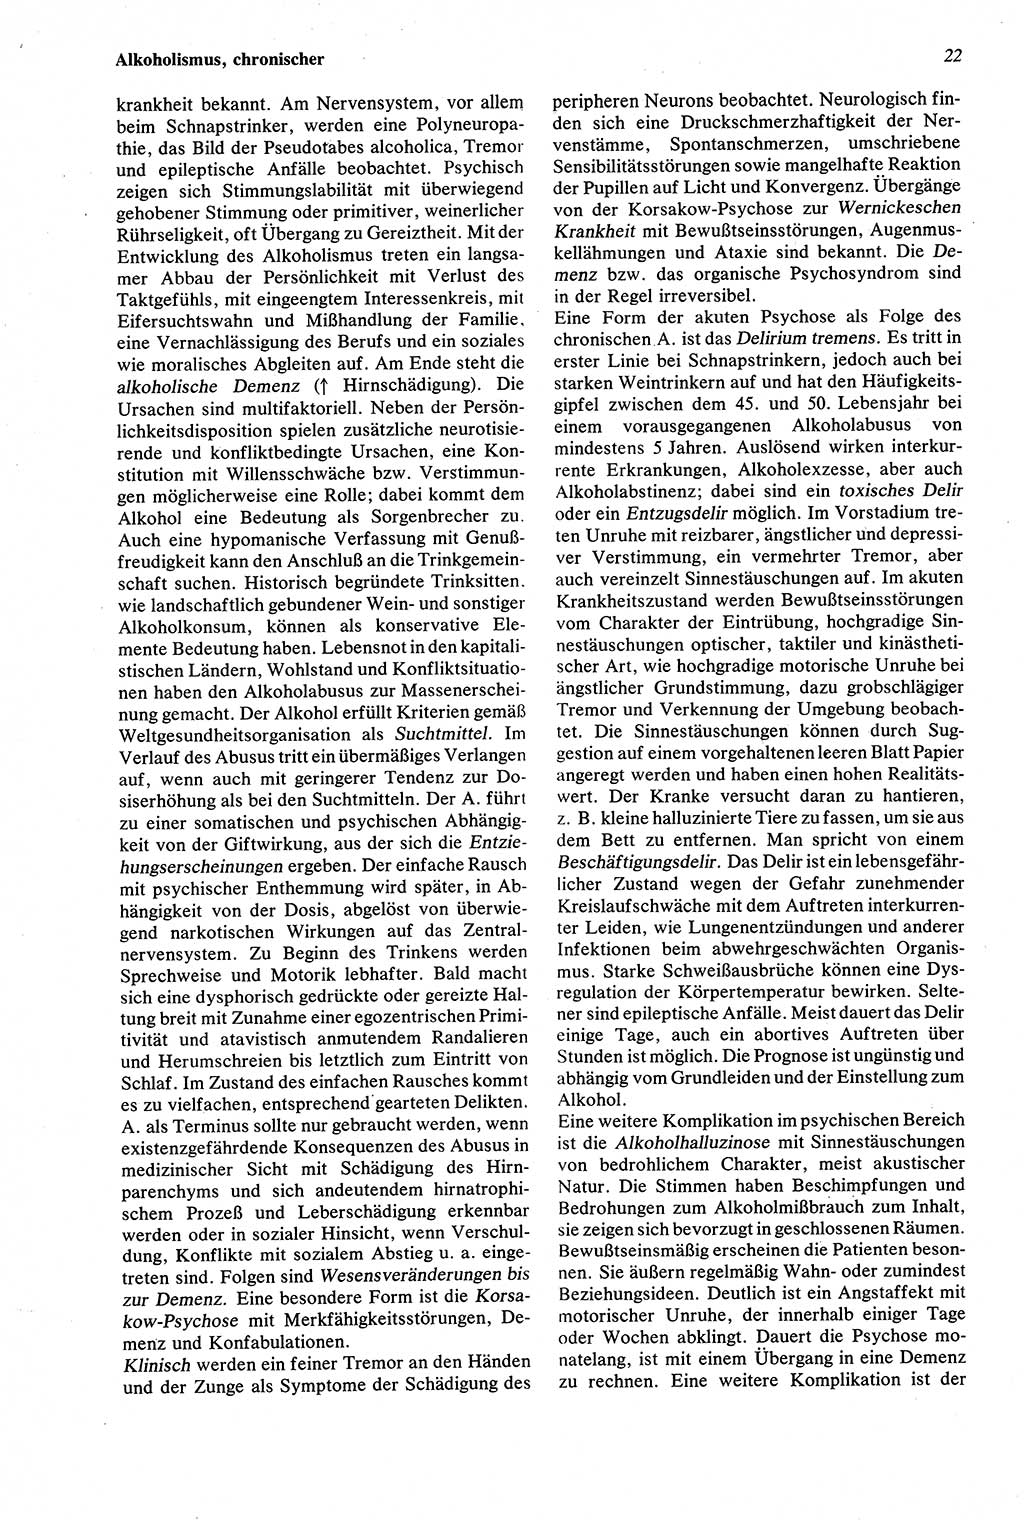 Wörterbuch der Psychologie [Deutsche Demokratische Republik (DDR)] 1976, Seite 22 (Wb. Psych. DDR 1976, S. 22)